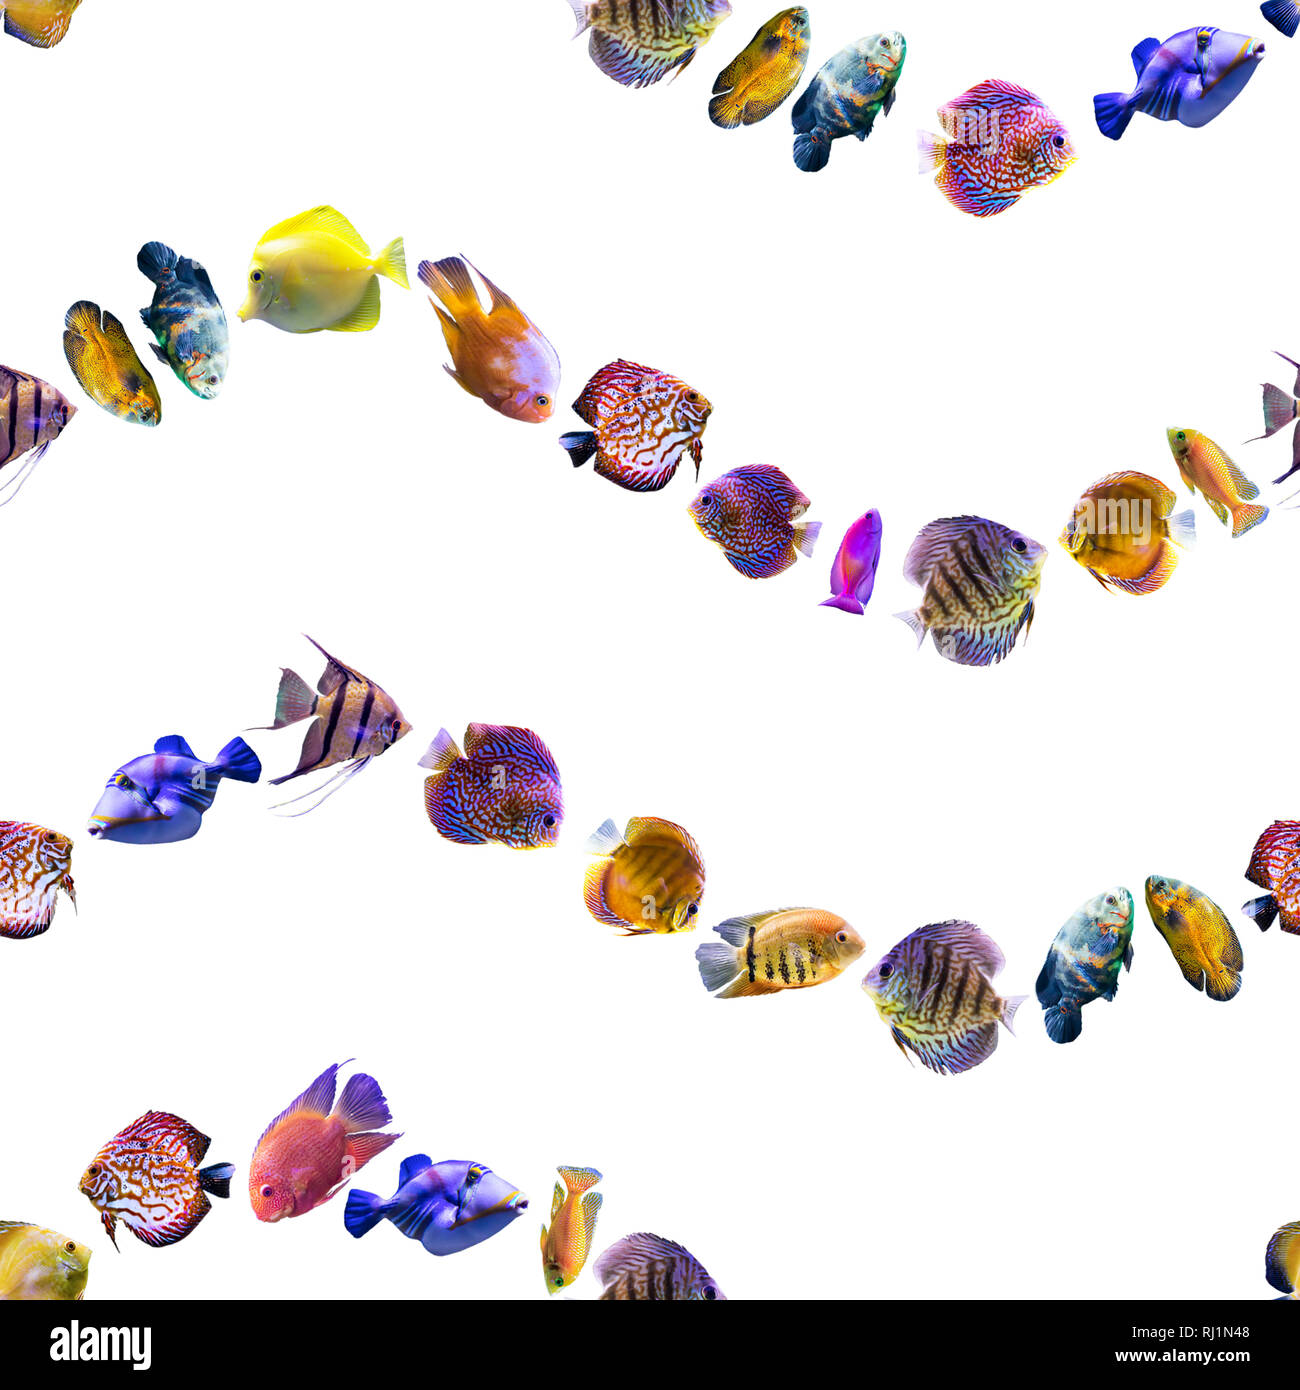 Wellenförmige nahtlose Muster. Bunten Fischen auf einem weißen Hintergrund. Über Natur, Kunst, Tiere, Meer, Fisch. Stockfoto